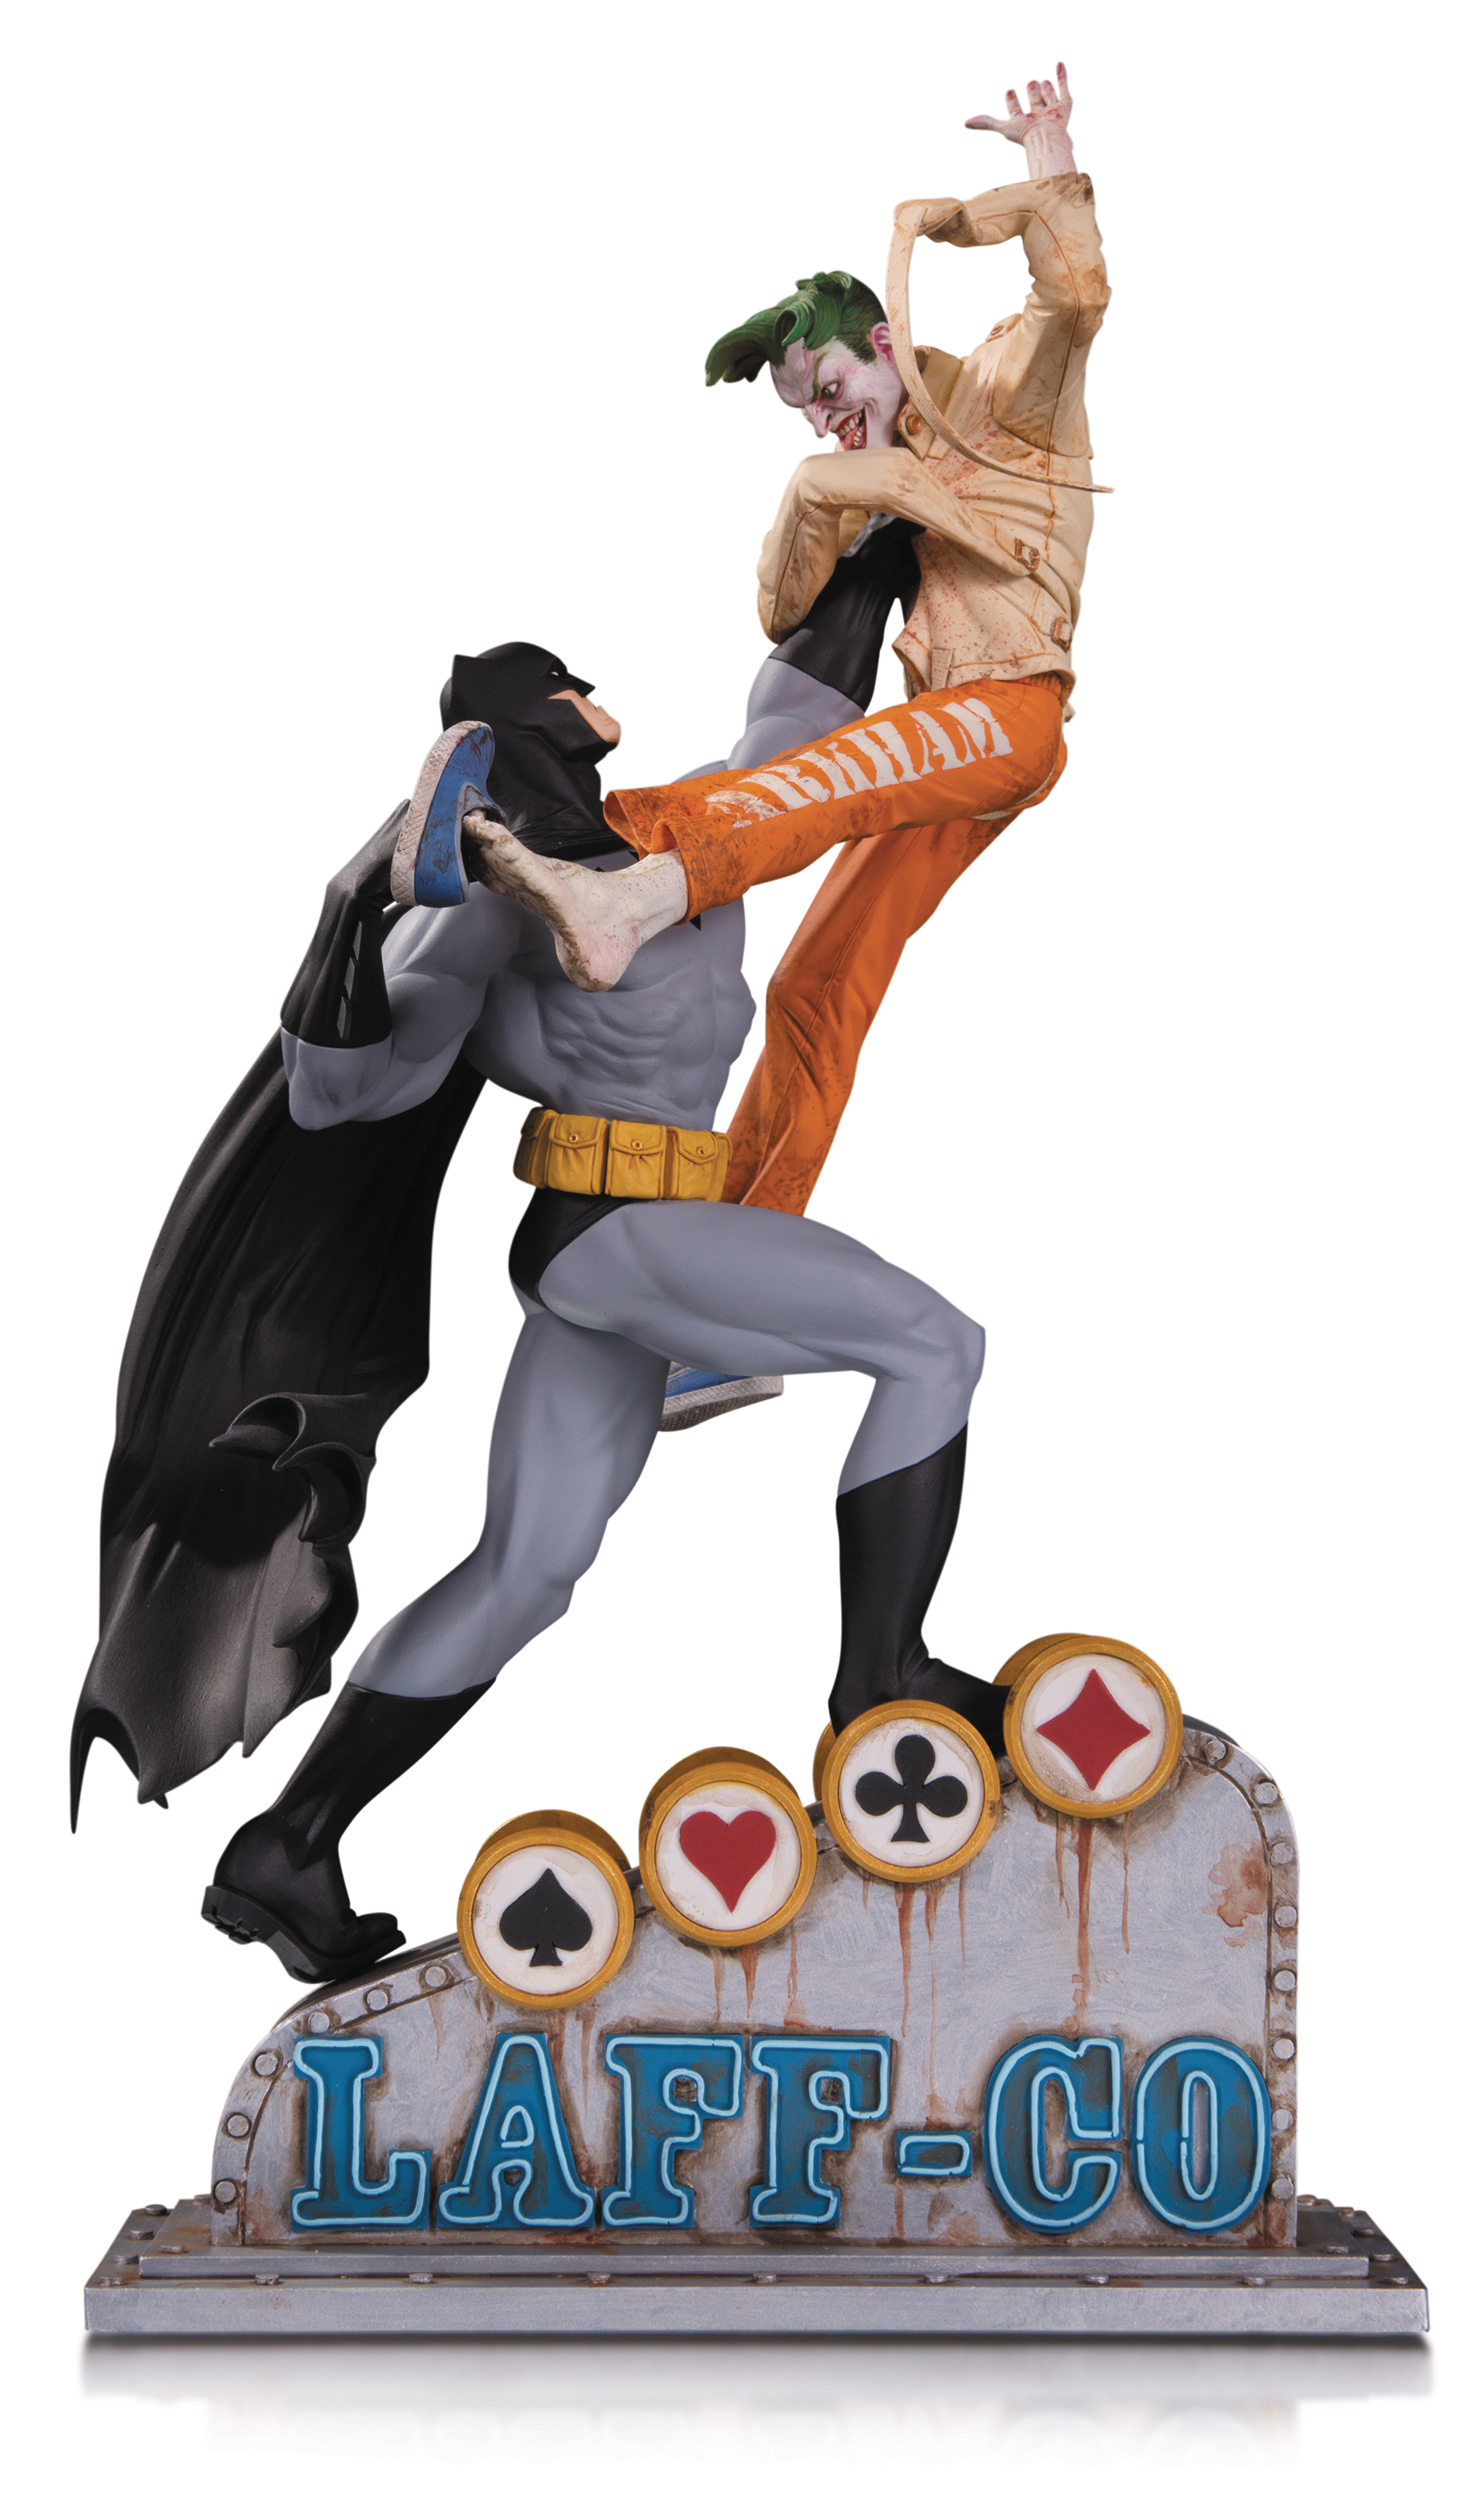 Batman Battles Joker in DC Collectibles Statue - Previews World